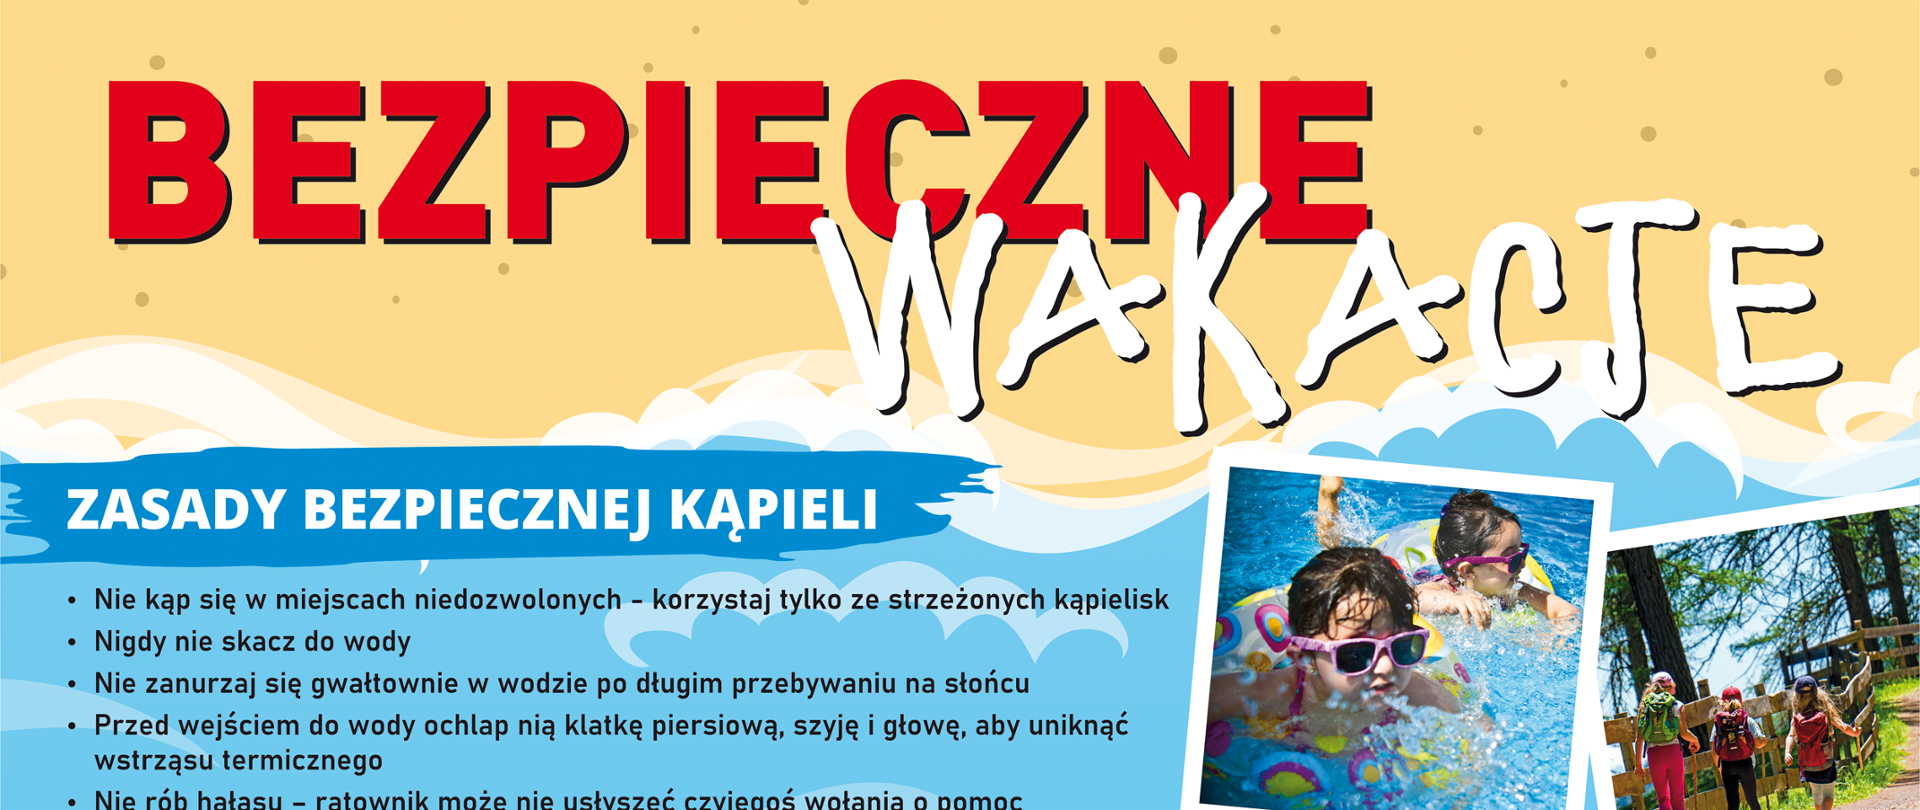 Stworzenie bezpiecznych warunków wypoczynku dzieci i młodzieży na terenie woj. śląskiego